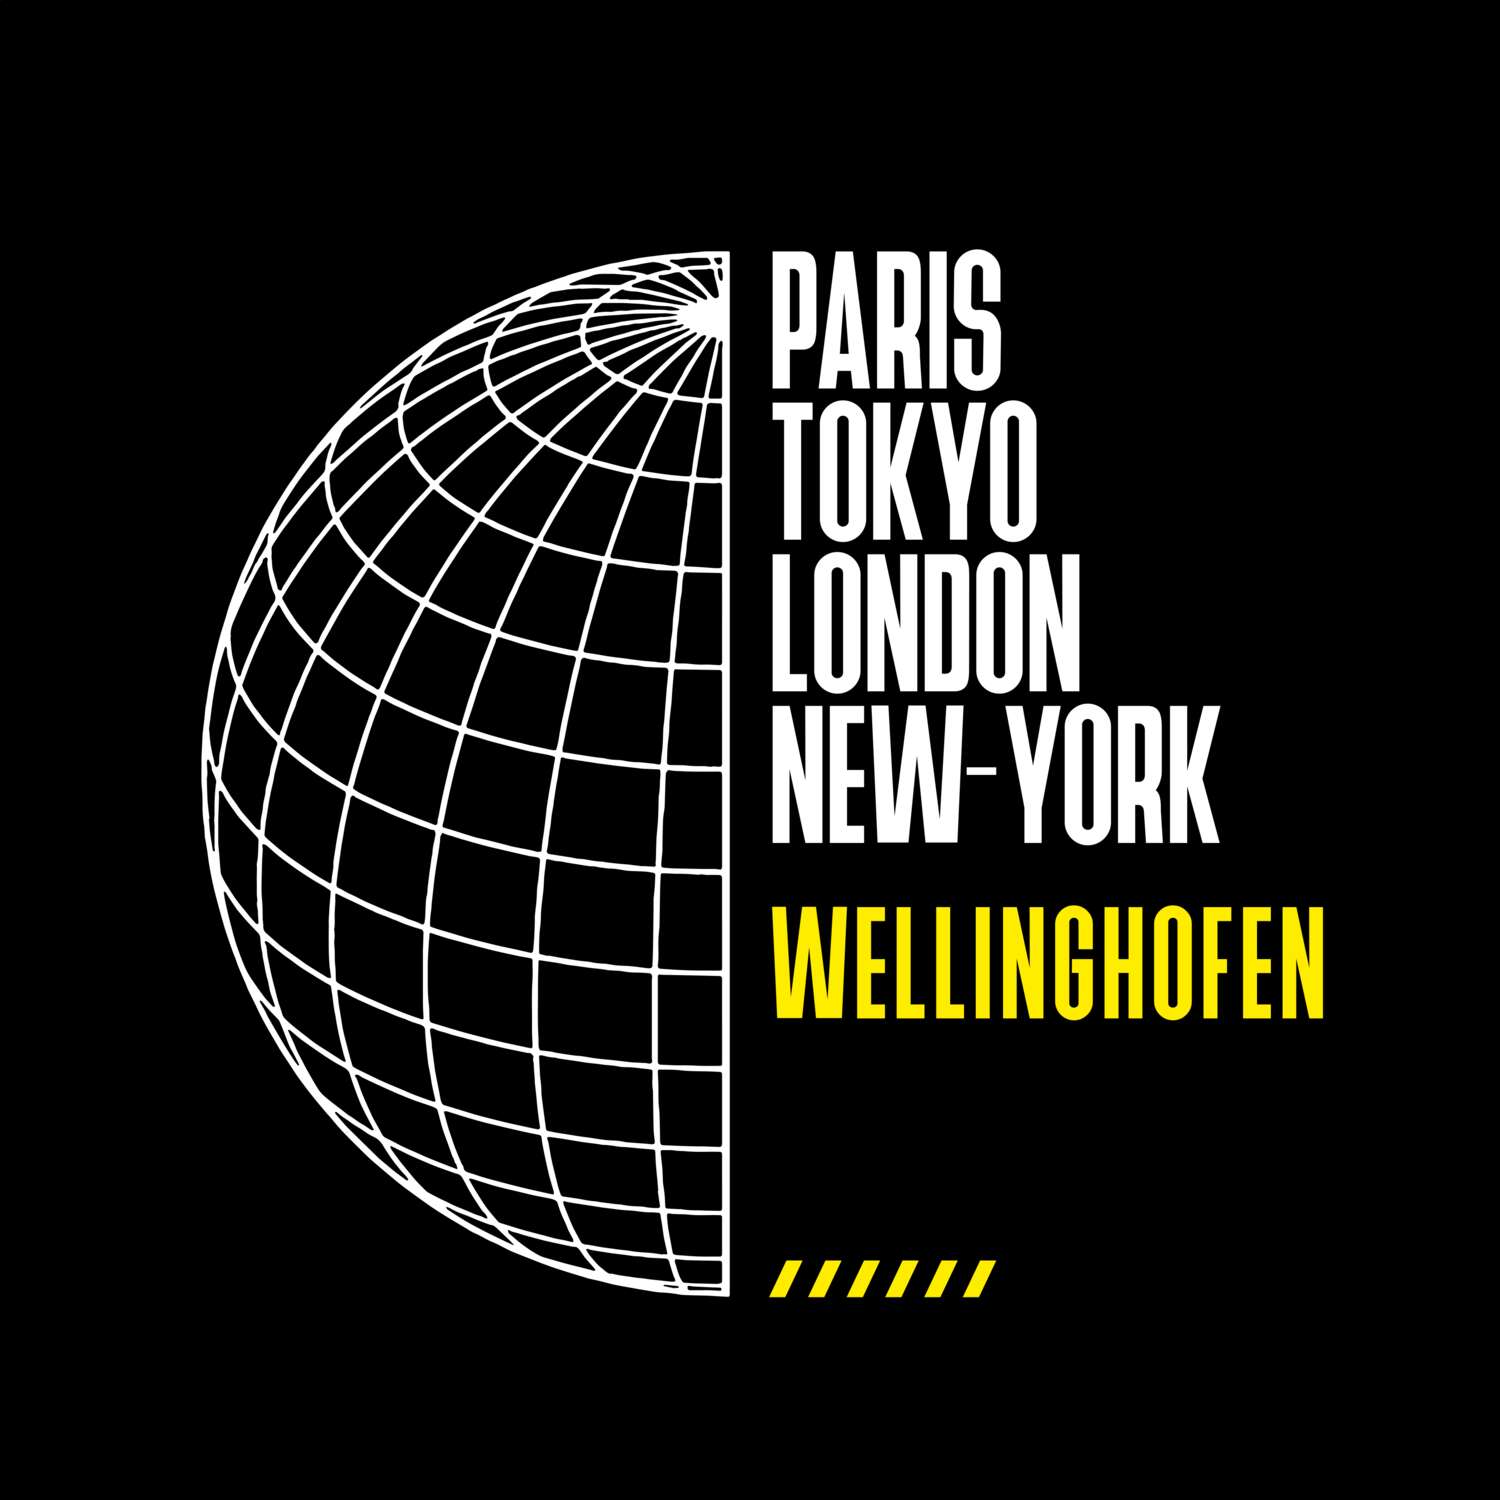 Wellinghofen T-Shirt »Paris Tokyo London«